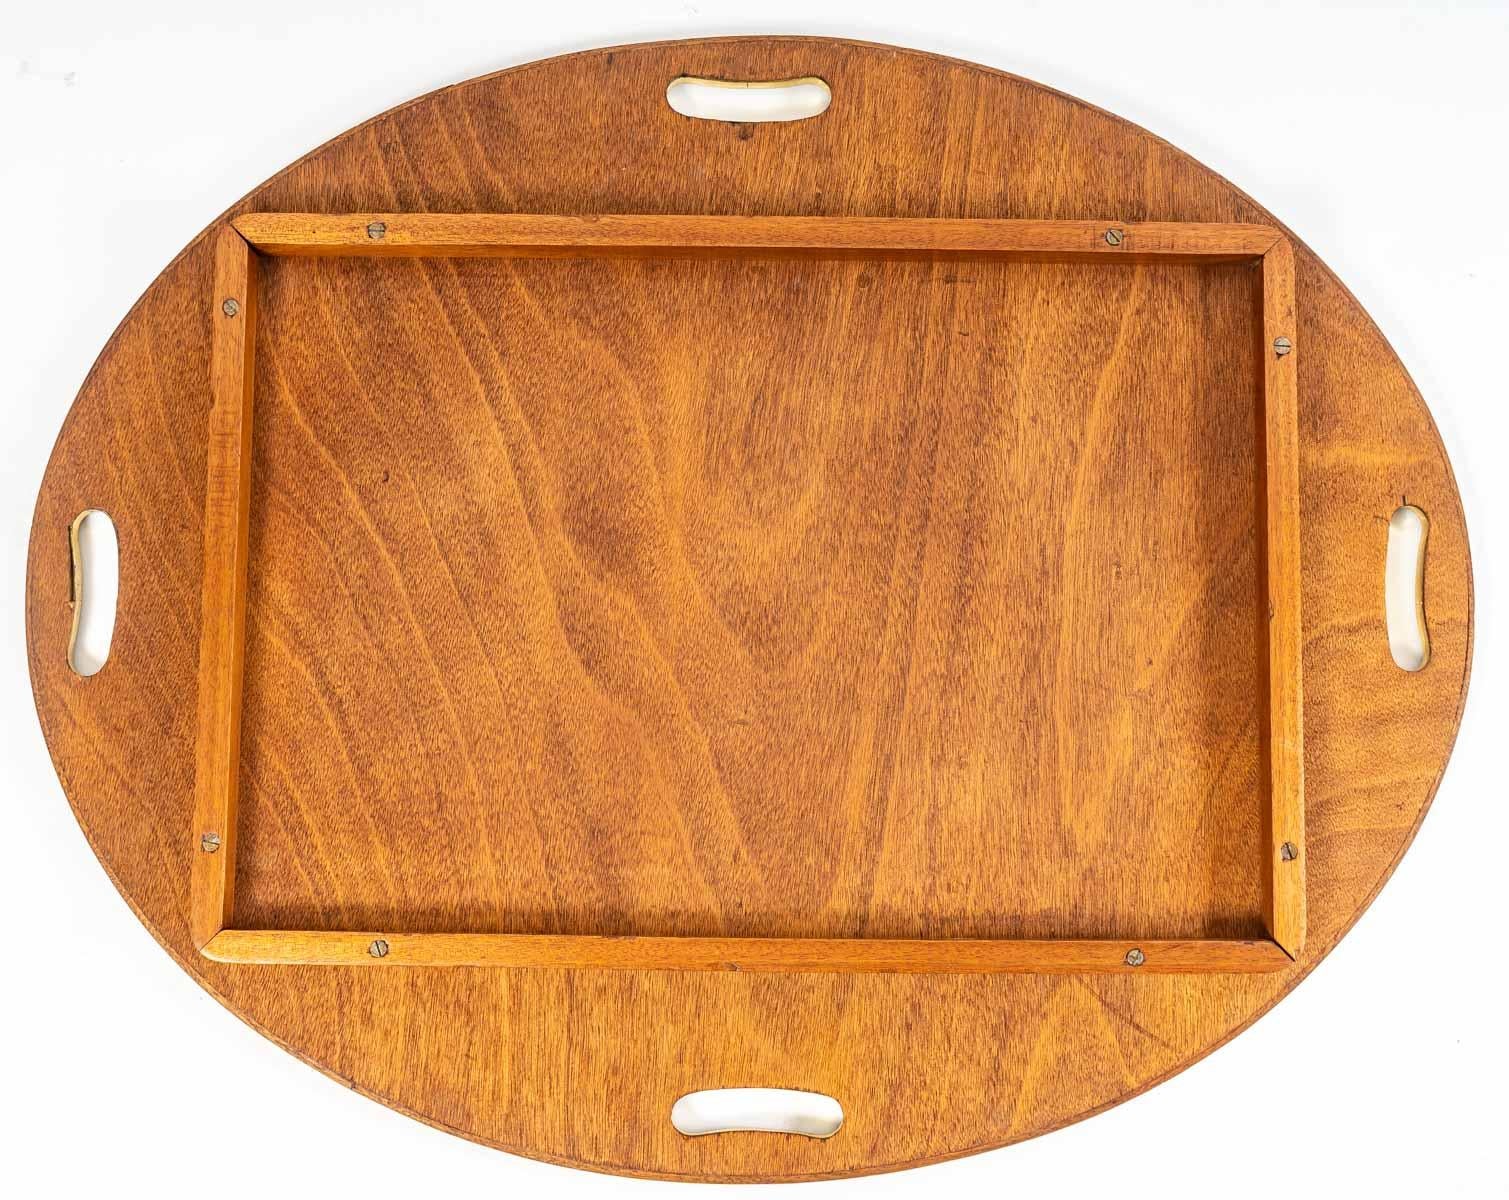 Table Basse de Bateau avec son plateau amovible en acajou et laiton, XXème siècle.
Maße: H: 54 cm, L: 92 cm, P: 74 cm
SM7001
 